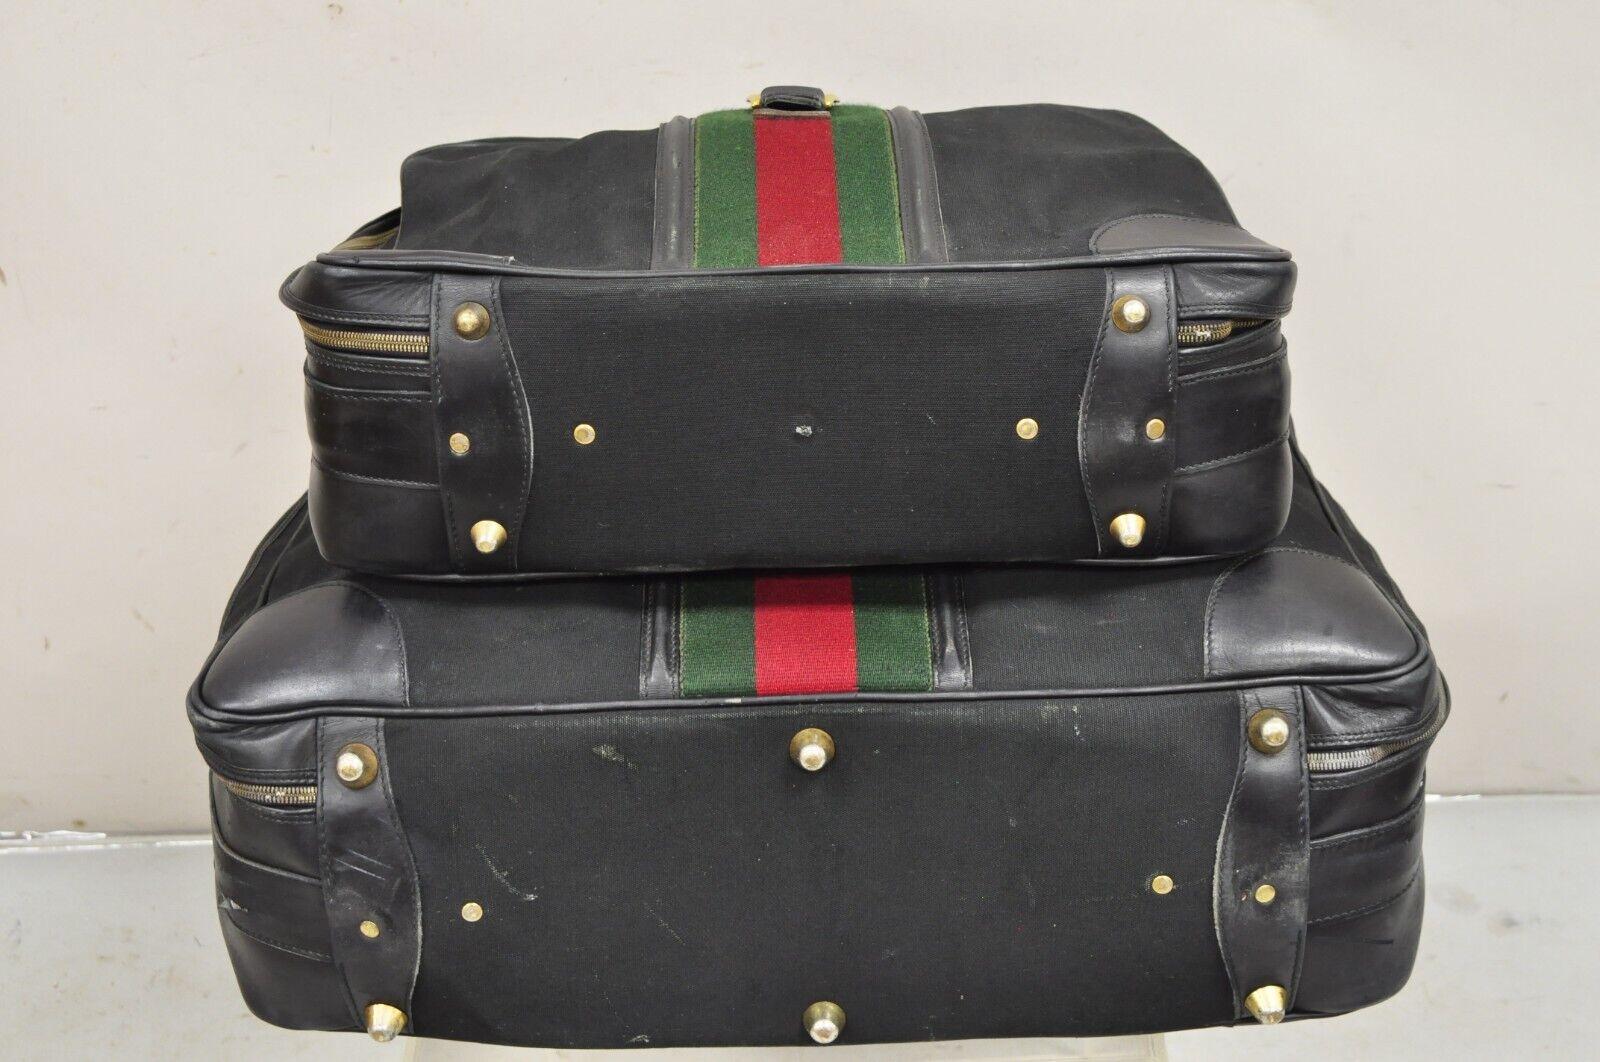 Vintage Gucci Black Canvas & Leather Suitcase Luggage Travel Bag Set - 2 Pcs For Sale 6